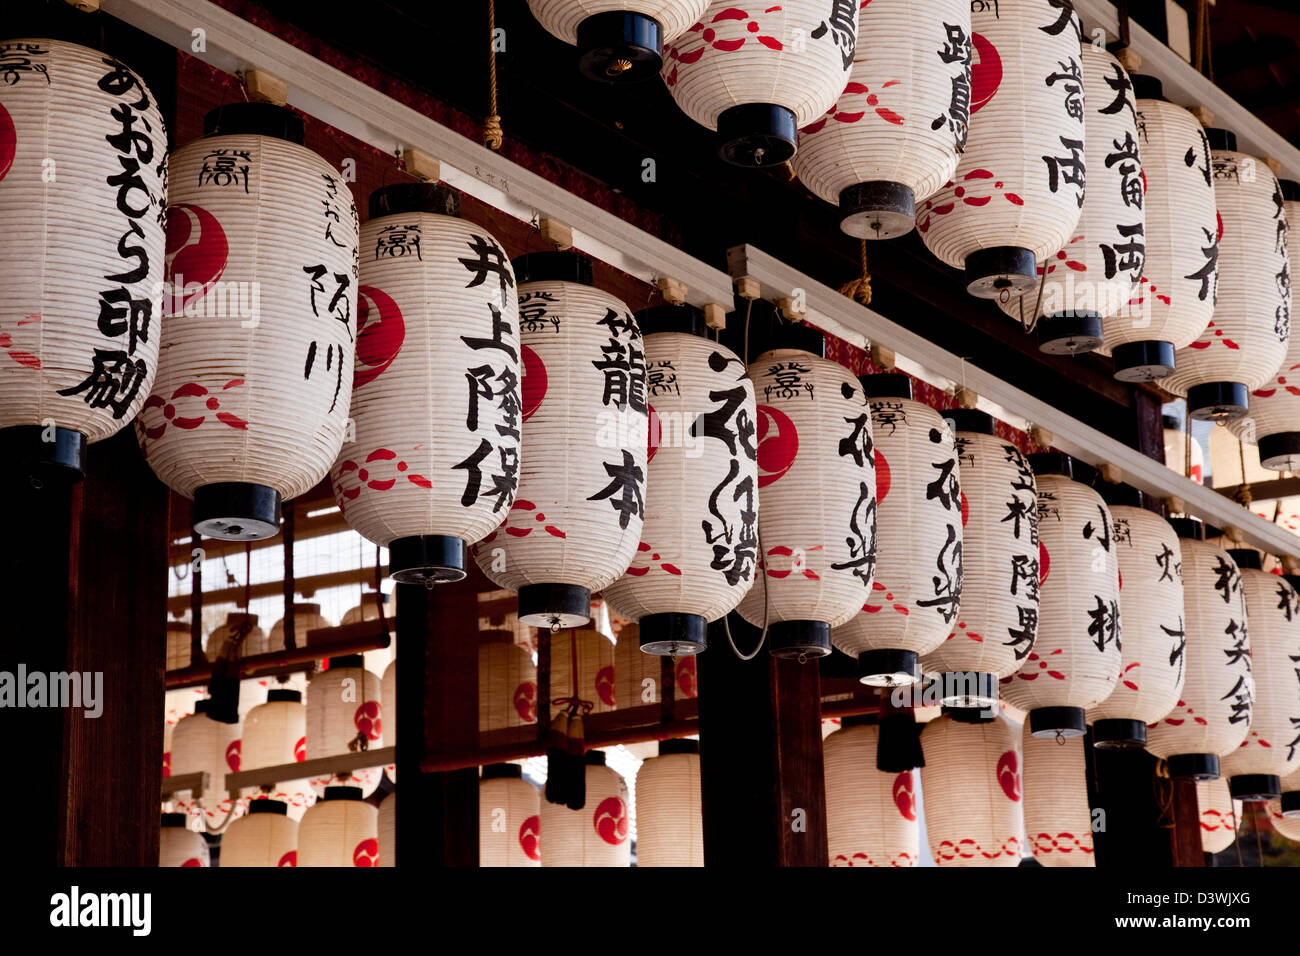 Traditionelle japanische Papierlaternen oder Chochin in einem Kyoto-Schrein jetzt oft beleuchtet von Elektrizität und die Steckdosen sind sichtbar. Stockfoto